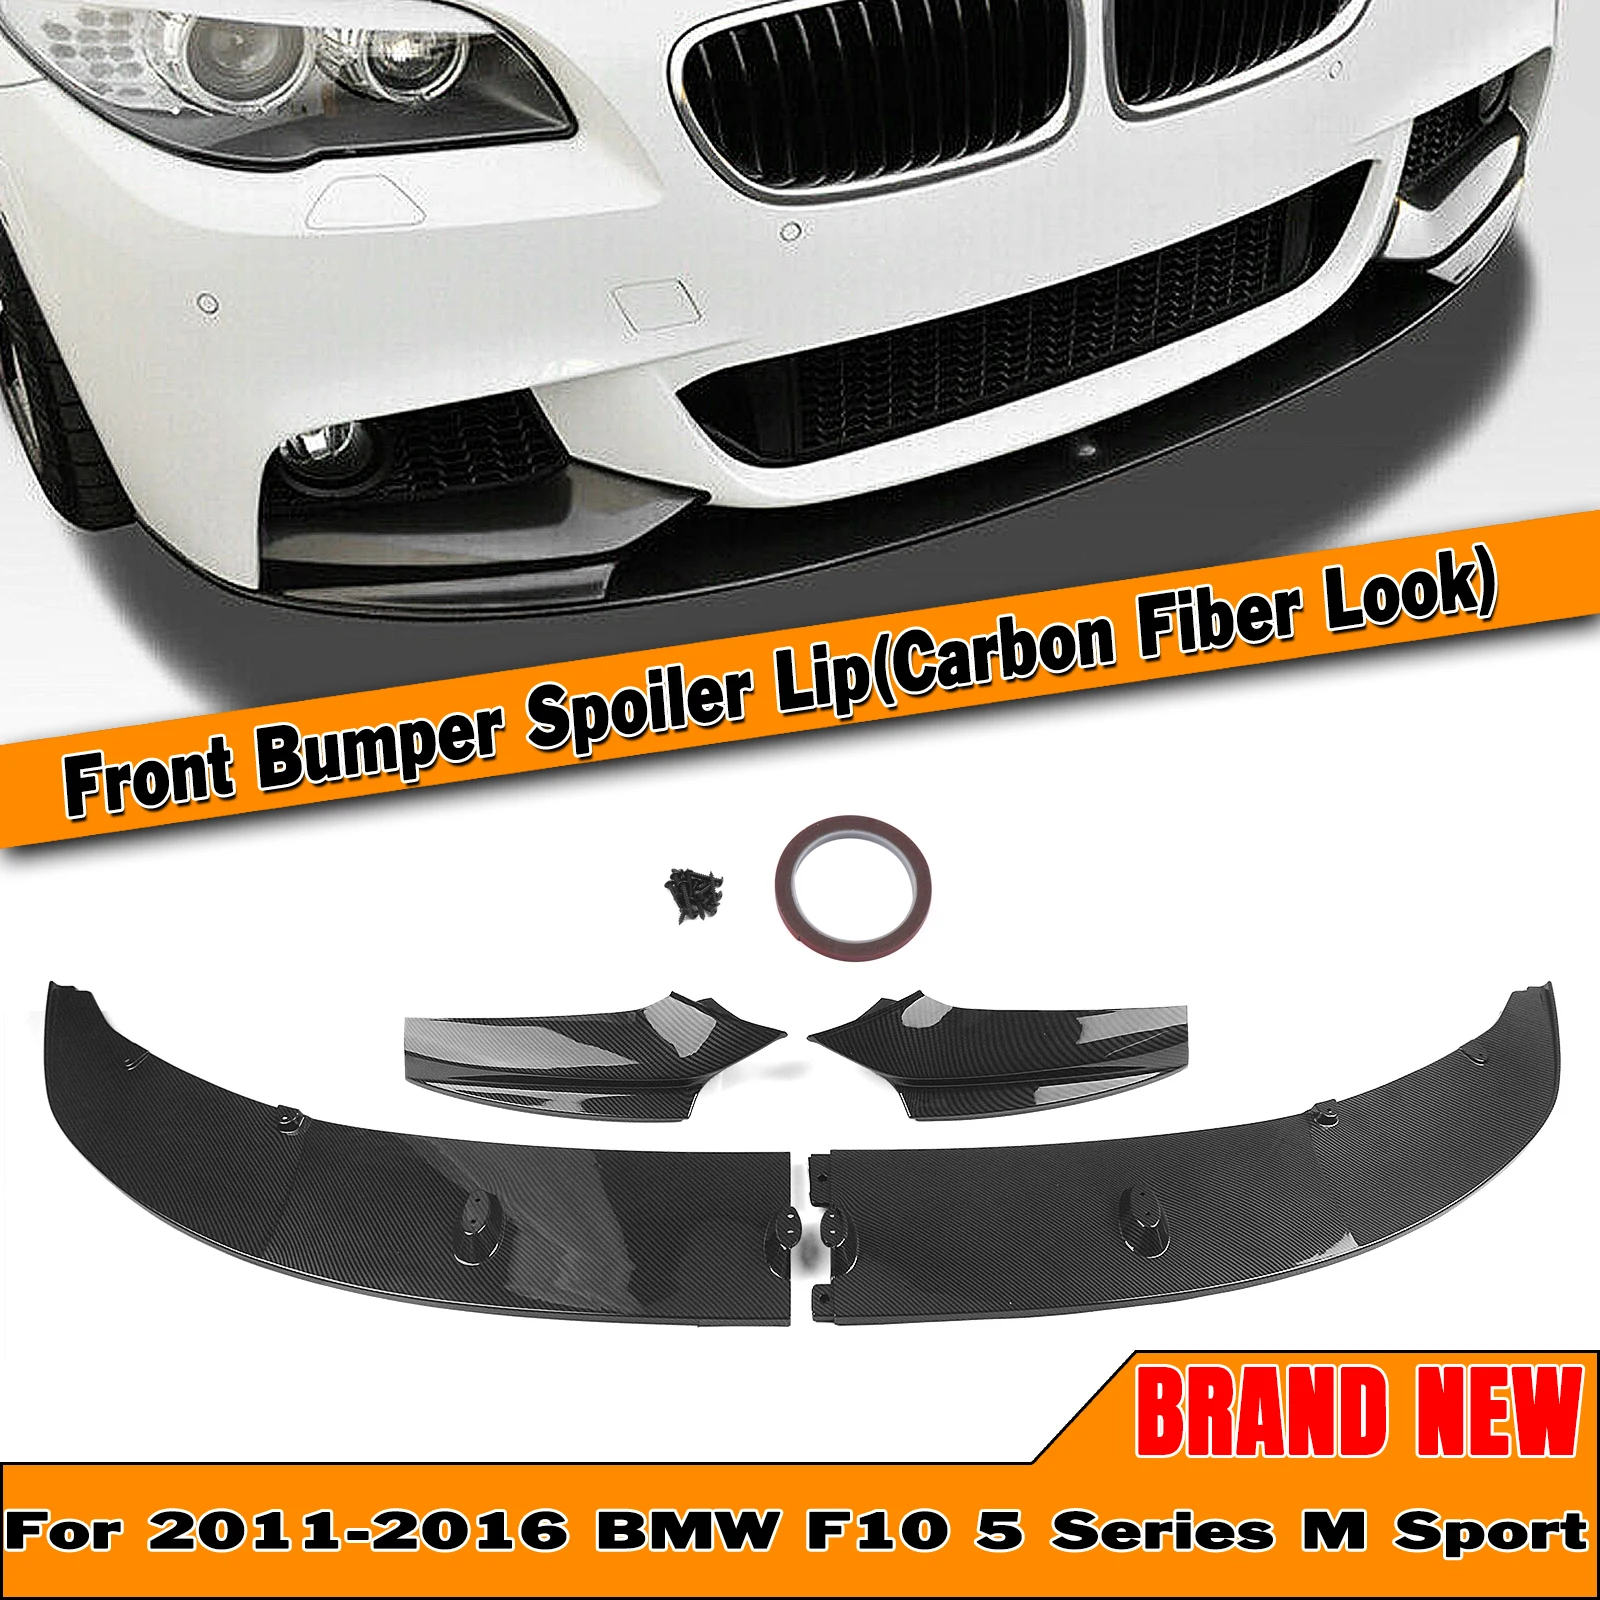 

Body Kit For BMW F10 5 Series 2011-2016 M Sport Bumper Front Spoiler Lip Carbon Fiber Look 550i 528i 530i Lower Splitter Blade